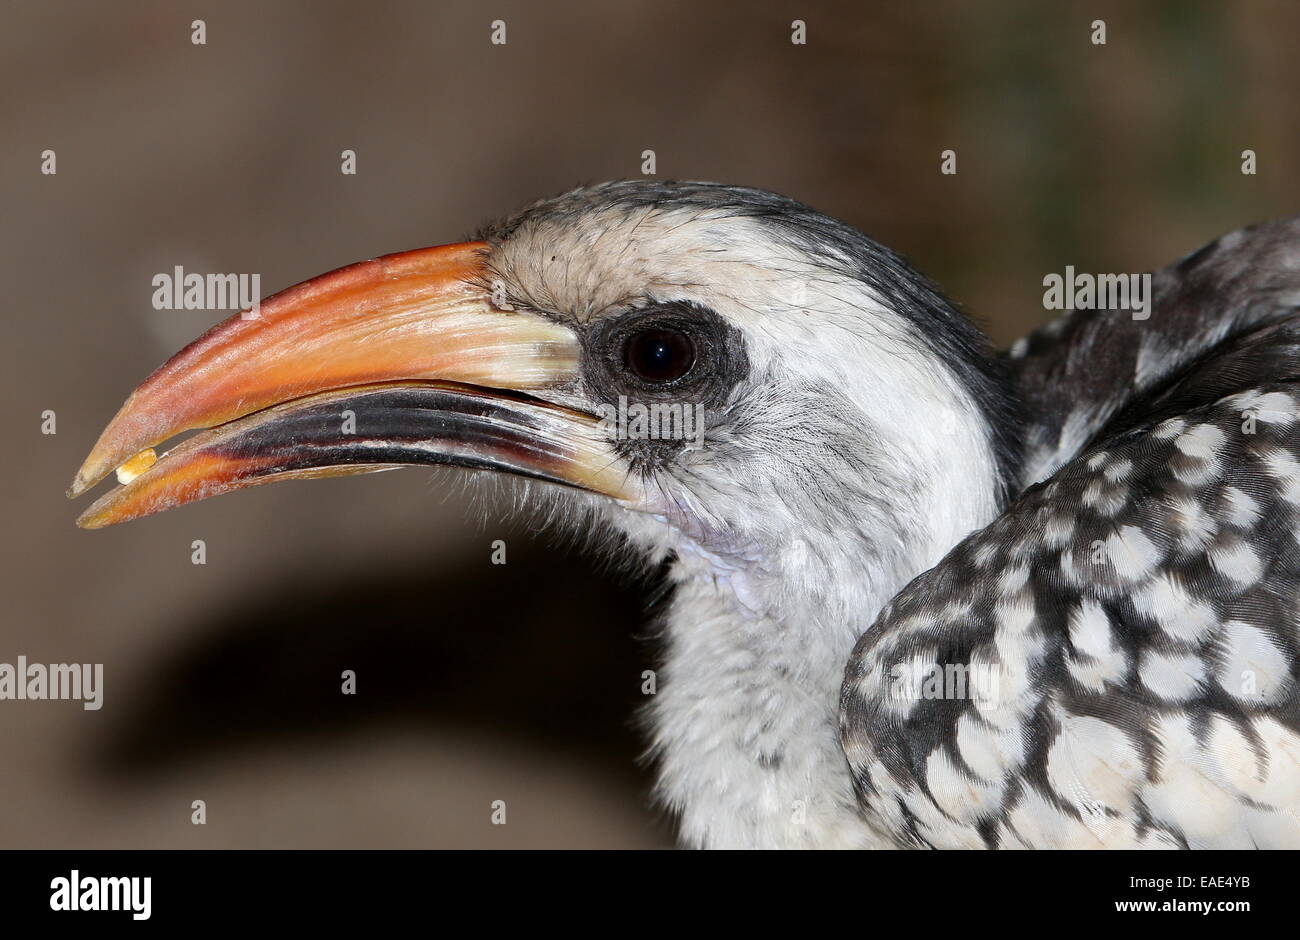 Northern red-fatturati hornbill (Tockus erythrorhynchus) visto di profilo, mangiando un seme Foto Stock